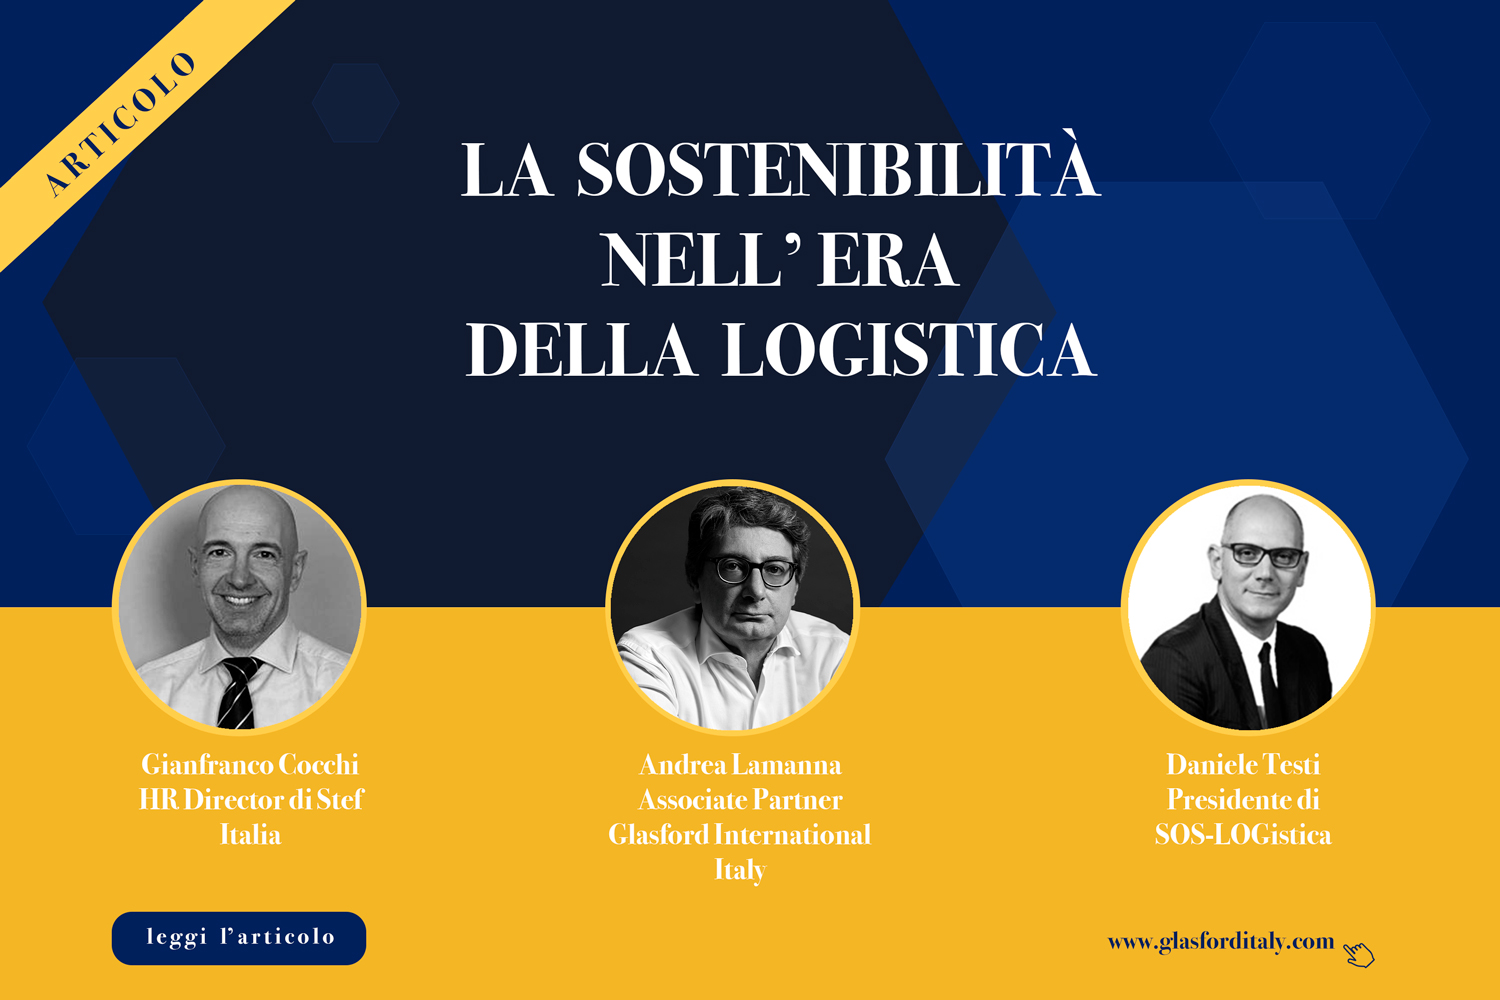 Andrea Lamanna, La sostenibilità nell'era della logistica